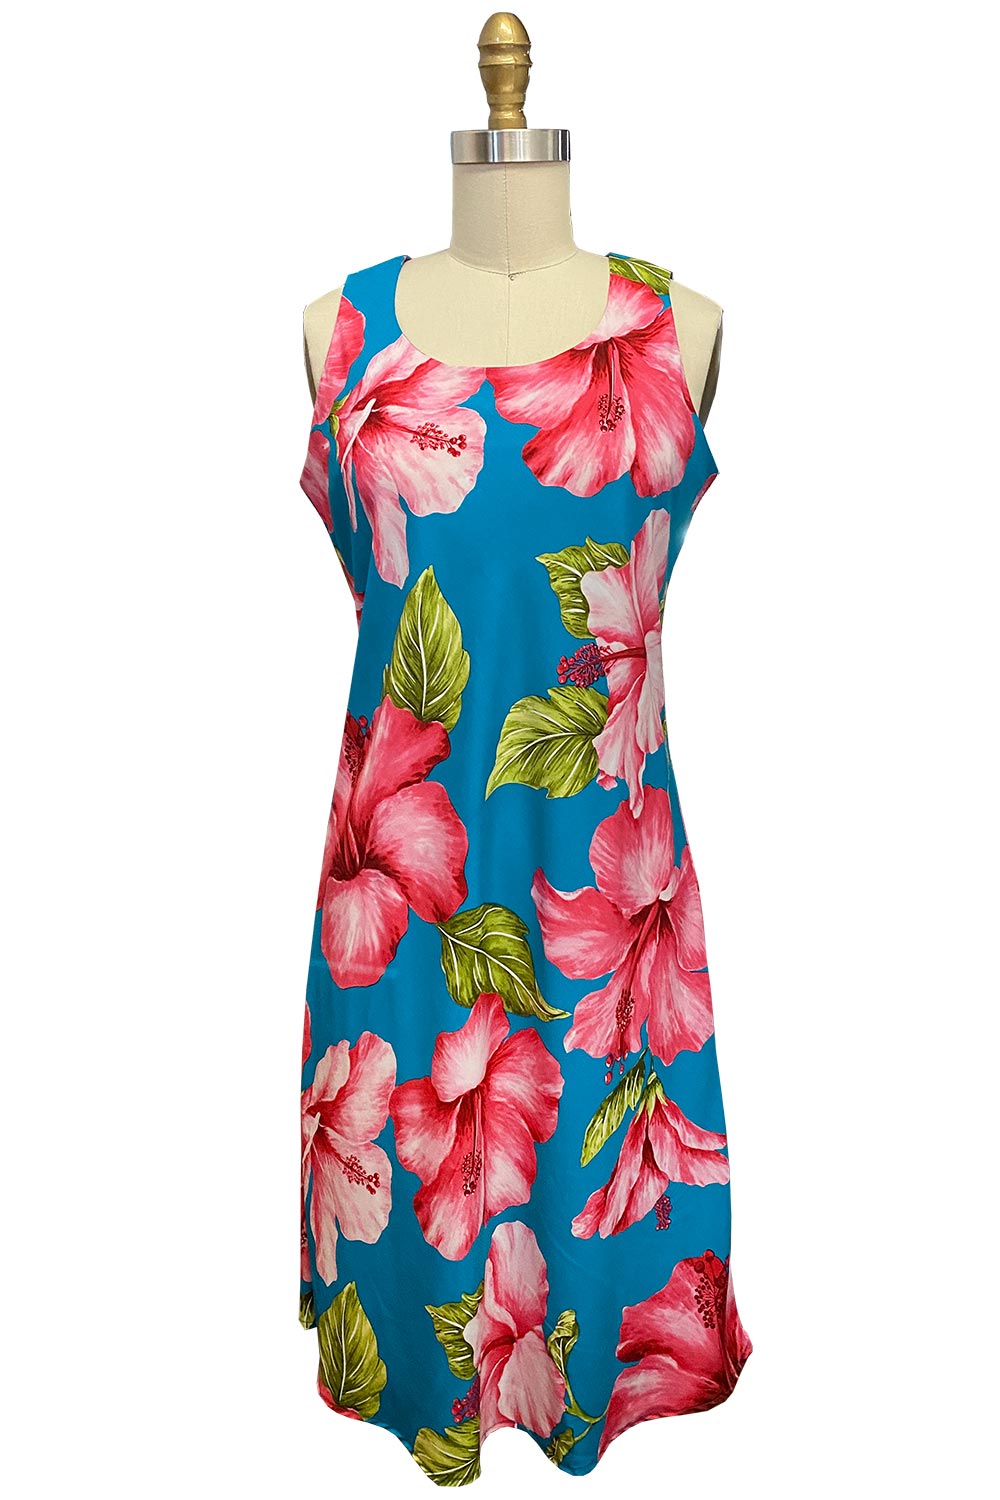 Super Hibiscus Teal Tank Dress – AlohaFunWear.com